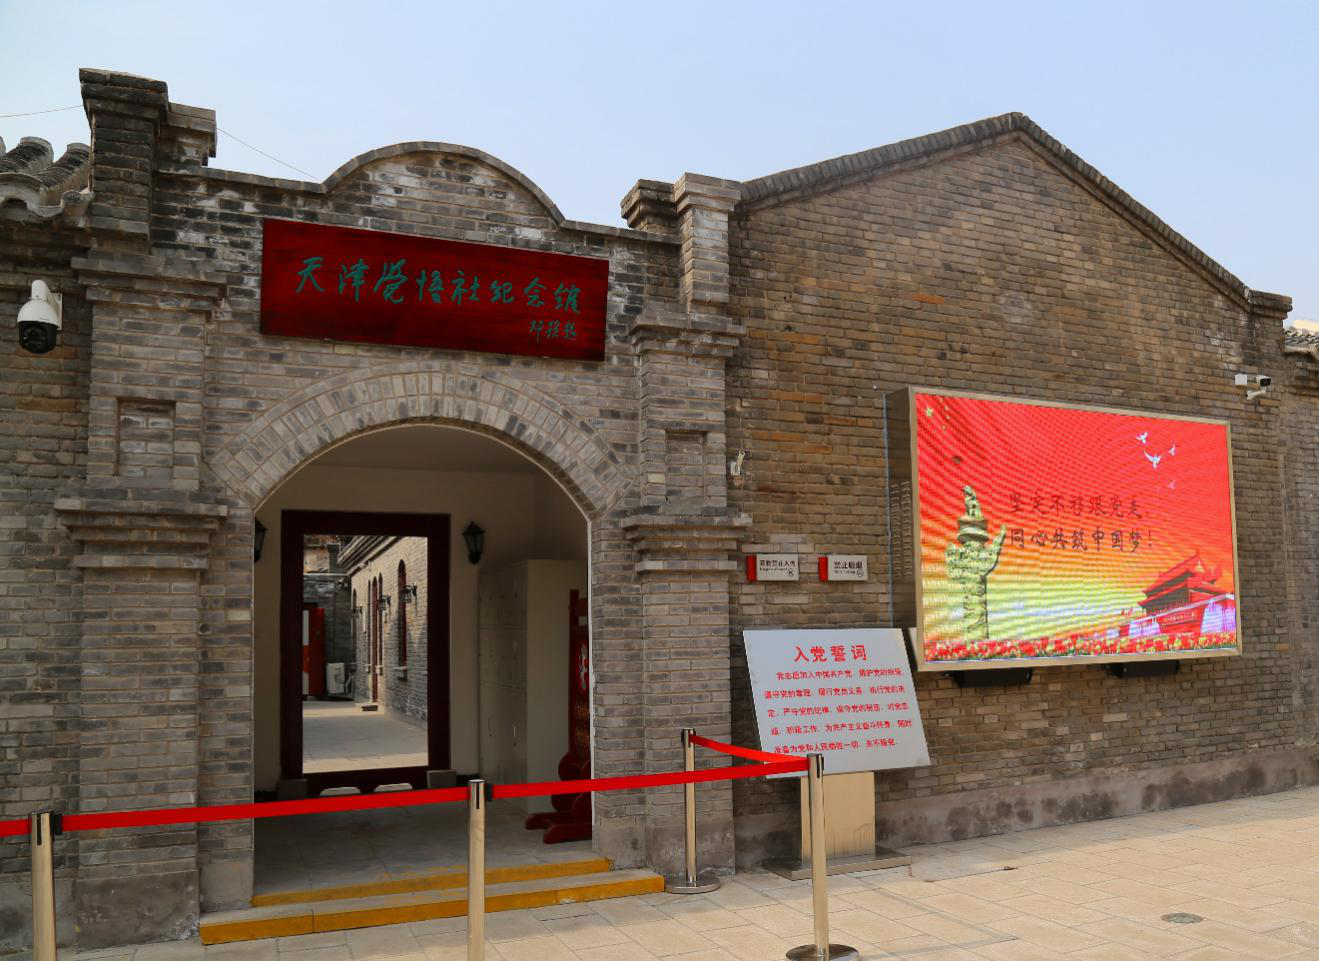 天津觉悟社纪念馆是一座建立在革命旧址上的红色纪念馆,社址坐落在